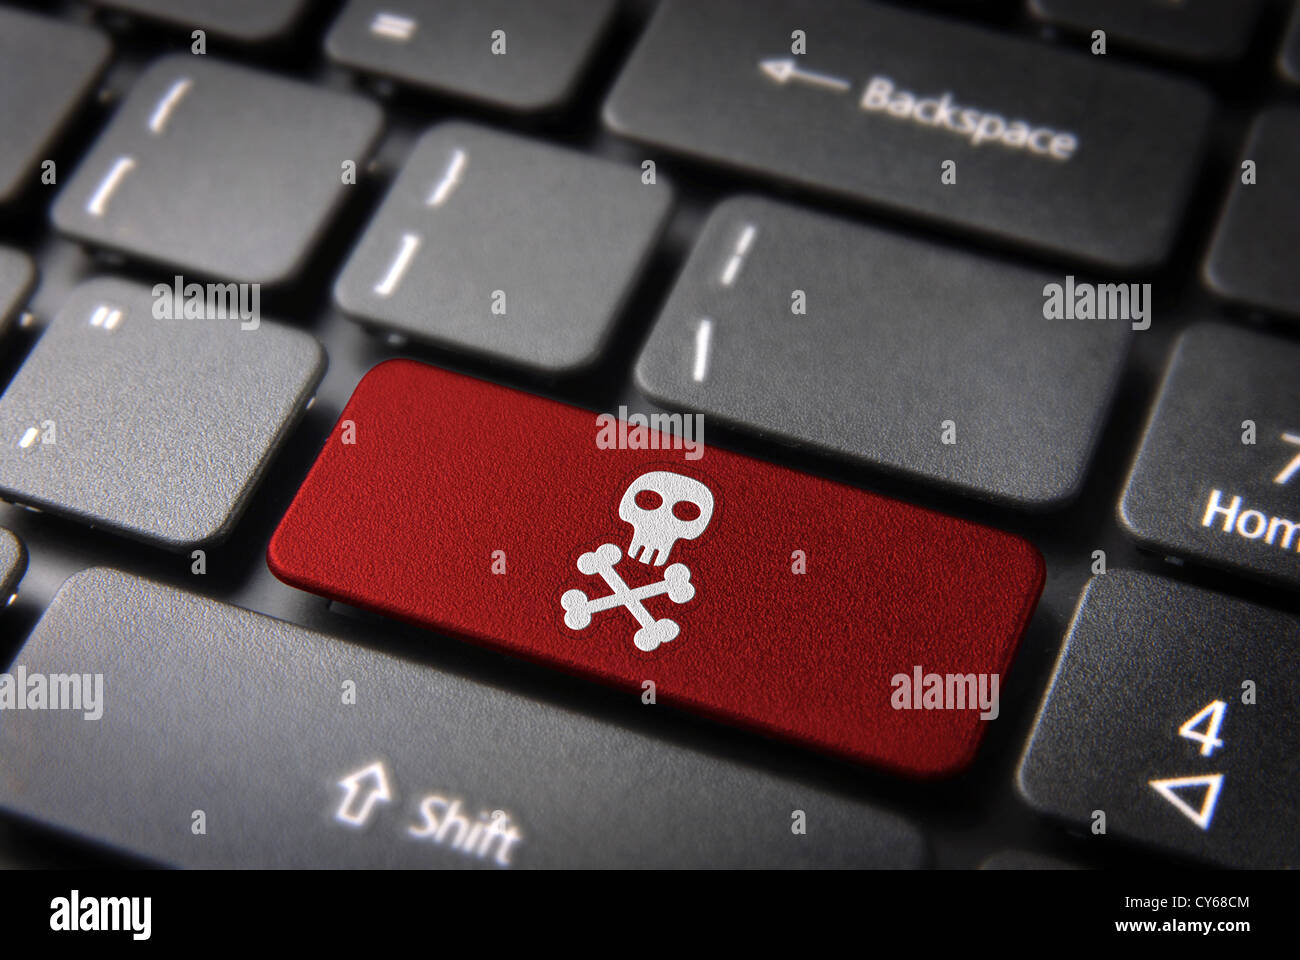 Internet-Business-Security-Konzept: rote Taste mit Totenkopf-Symbol auf Laptop-Tastatur. Im Preis inbegriffen Clipping-Pfad, so dass Sie leicht bearbeitet werden kann. Stockfoto